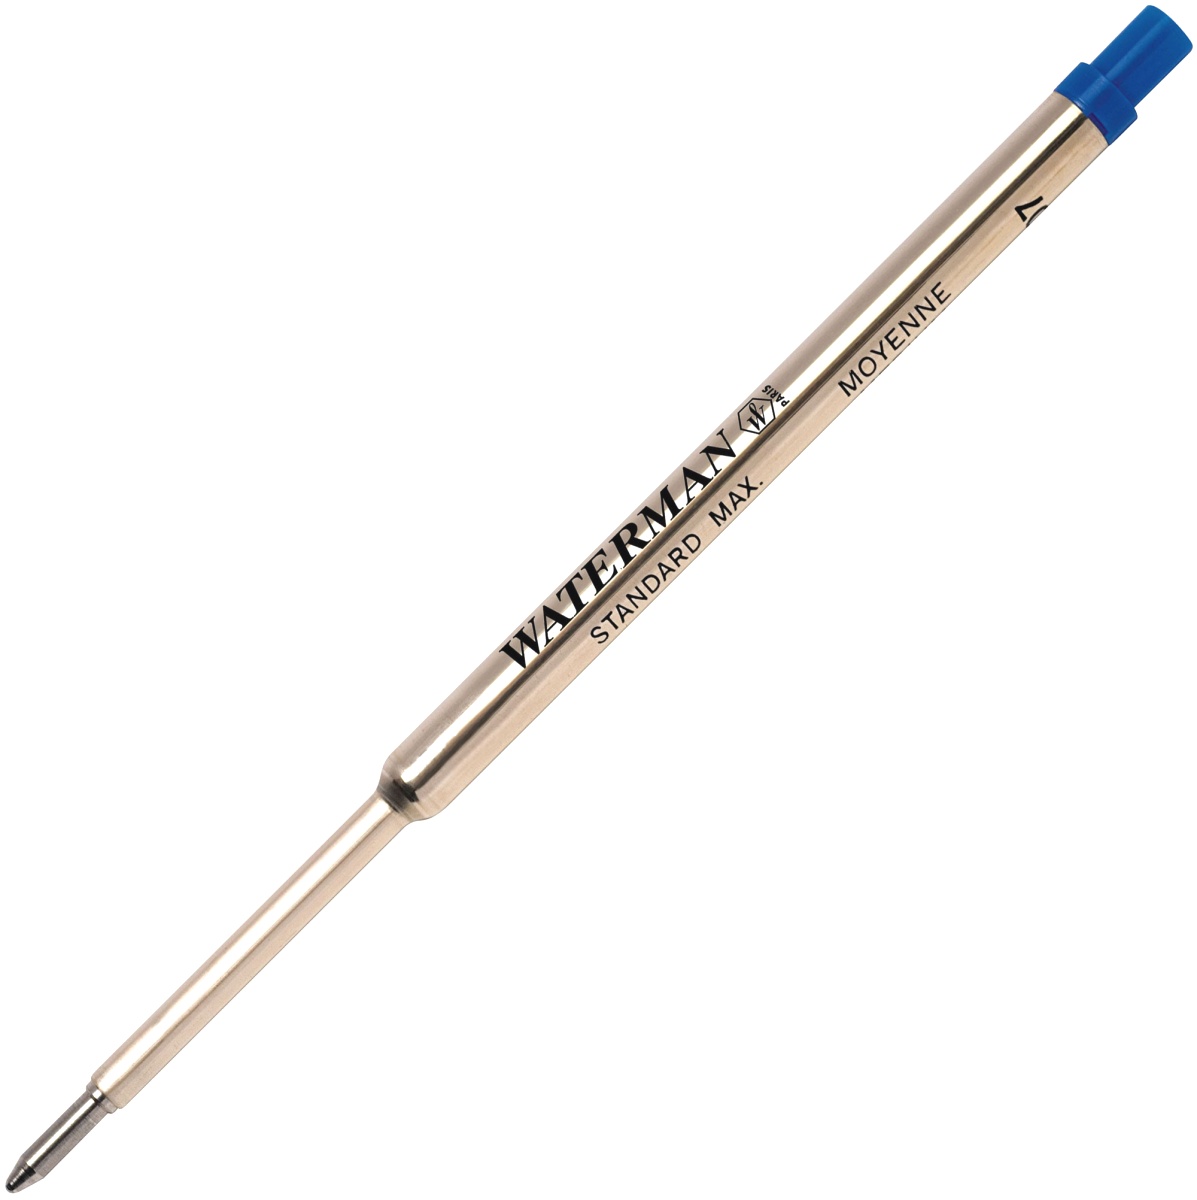  Синий стержень для шариковой ручки Waterman Refill BP Standard Maxima (F), фото 2